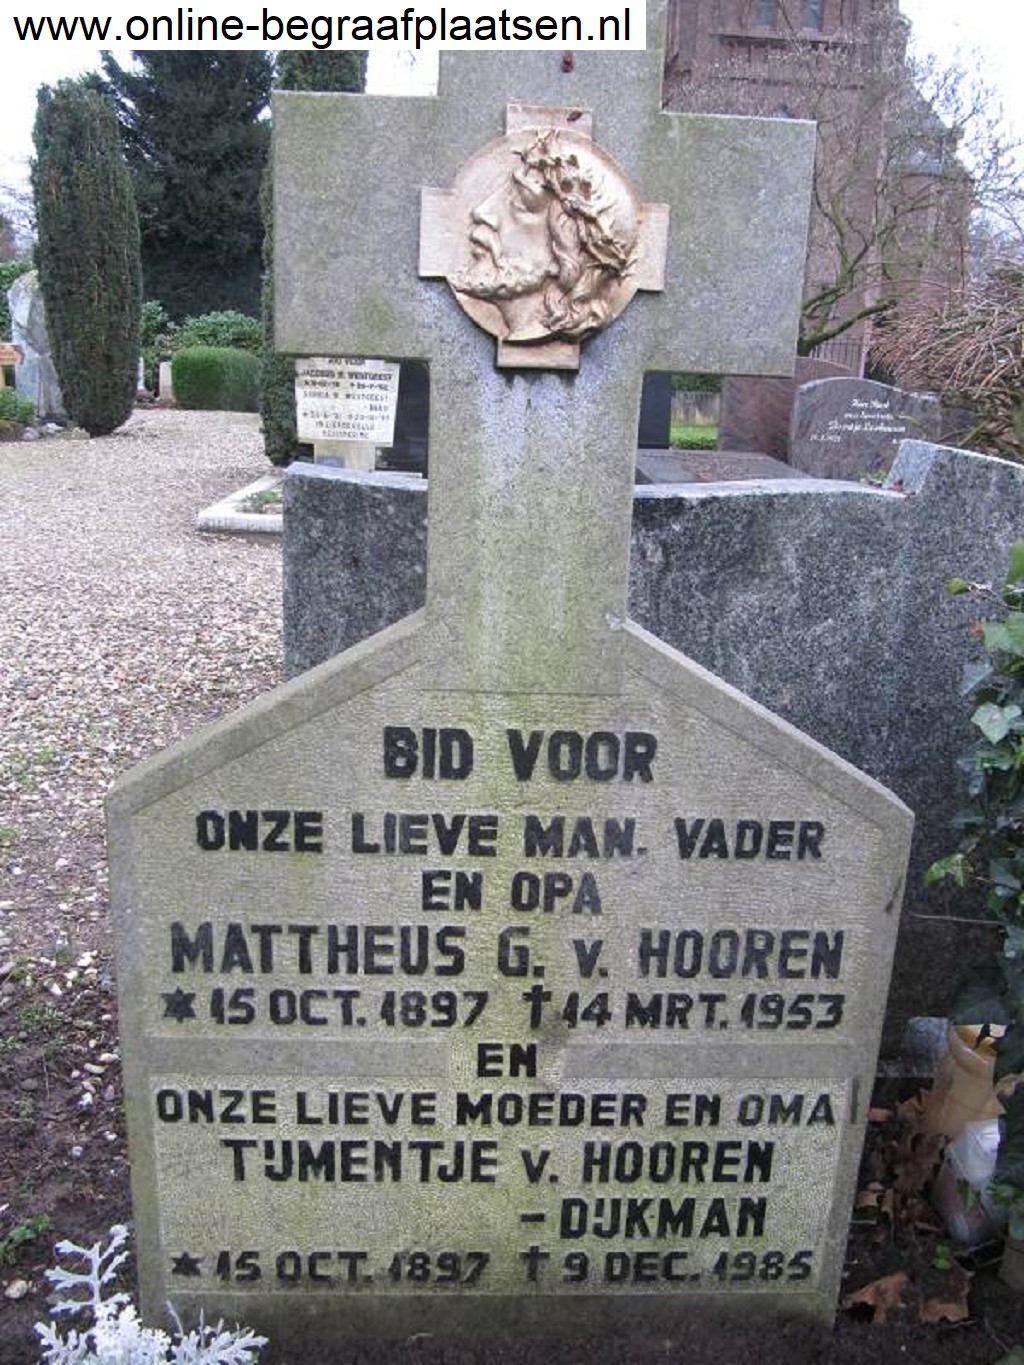 Mattheus Gerardus van Hooren